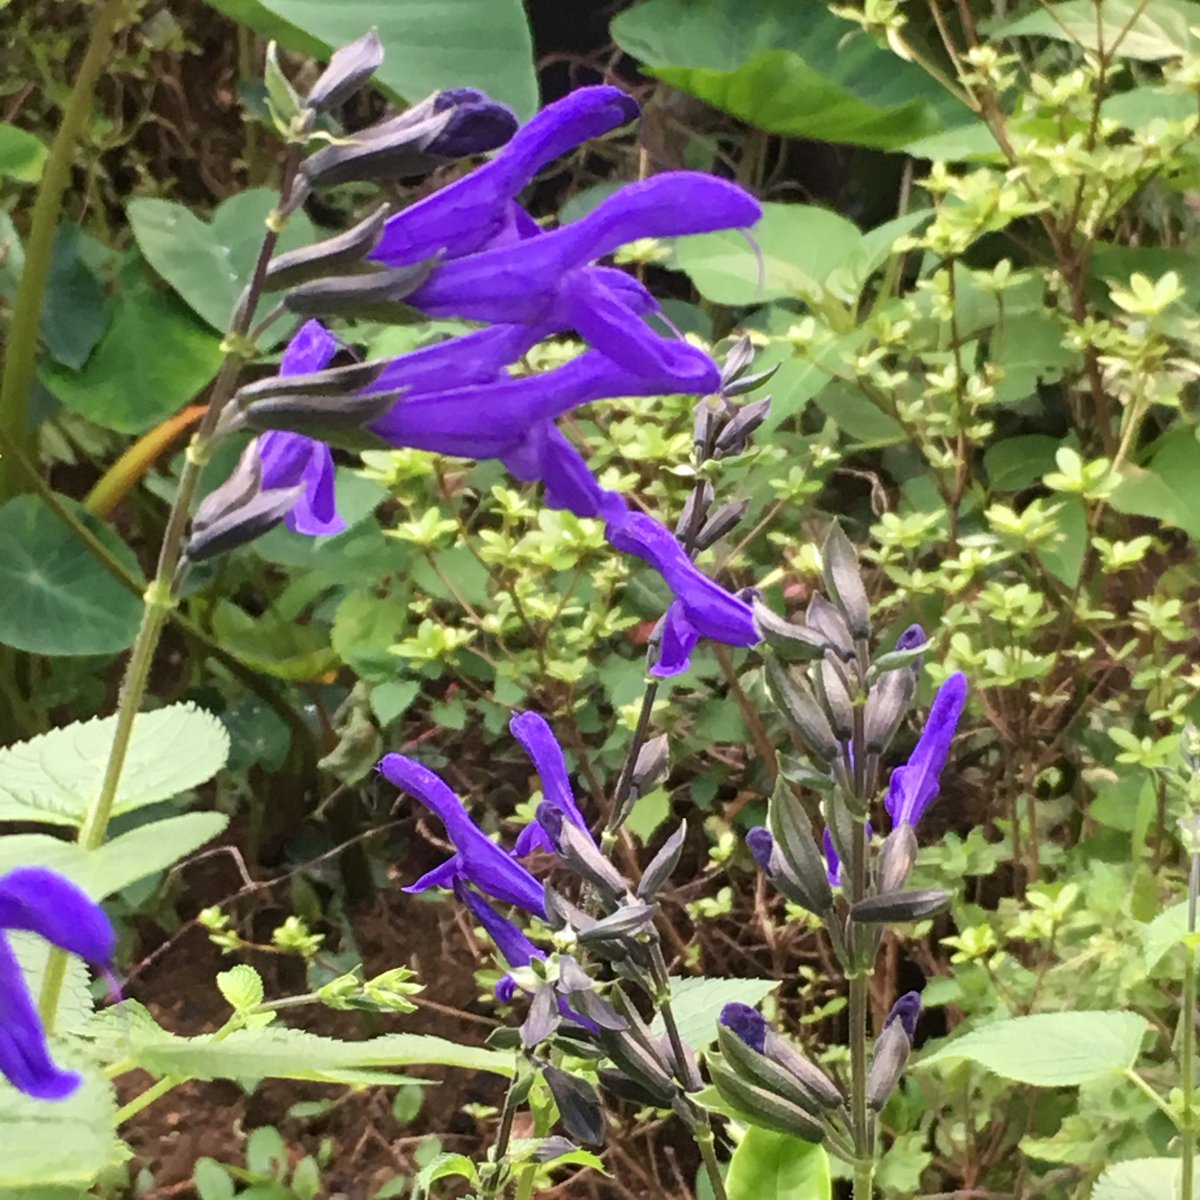 ぎほうさん こみたん おはようございます 今朝の花は庭の片隅に 咲いてる紫の花 どうやらハーブ ツンとした 香りを放っています この花はフォロワーさんが メドーセージと教えて くれました 今も色鮮やかに咲いて 緑の中に濃い紫が映えます 花